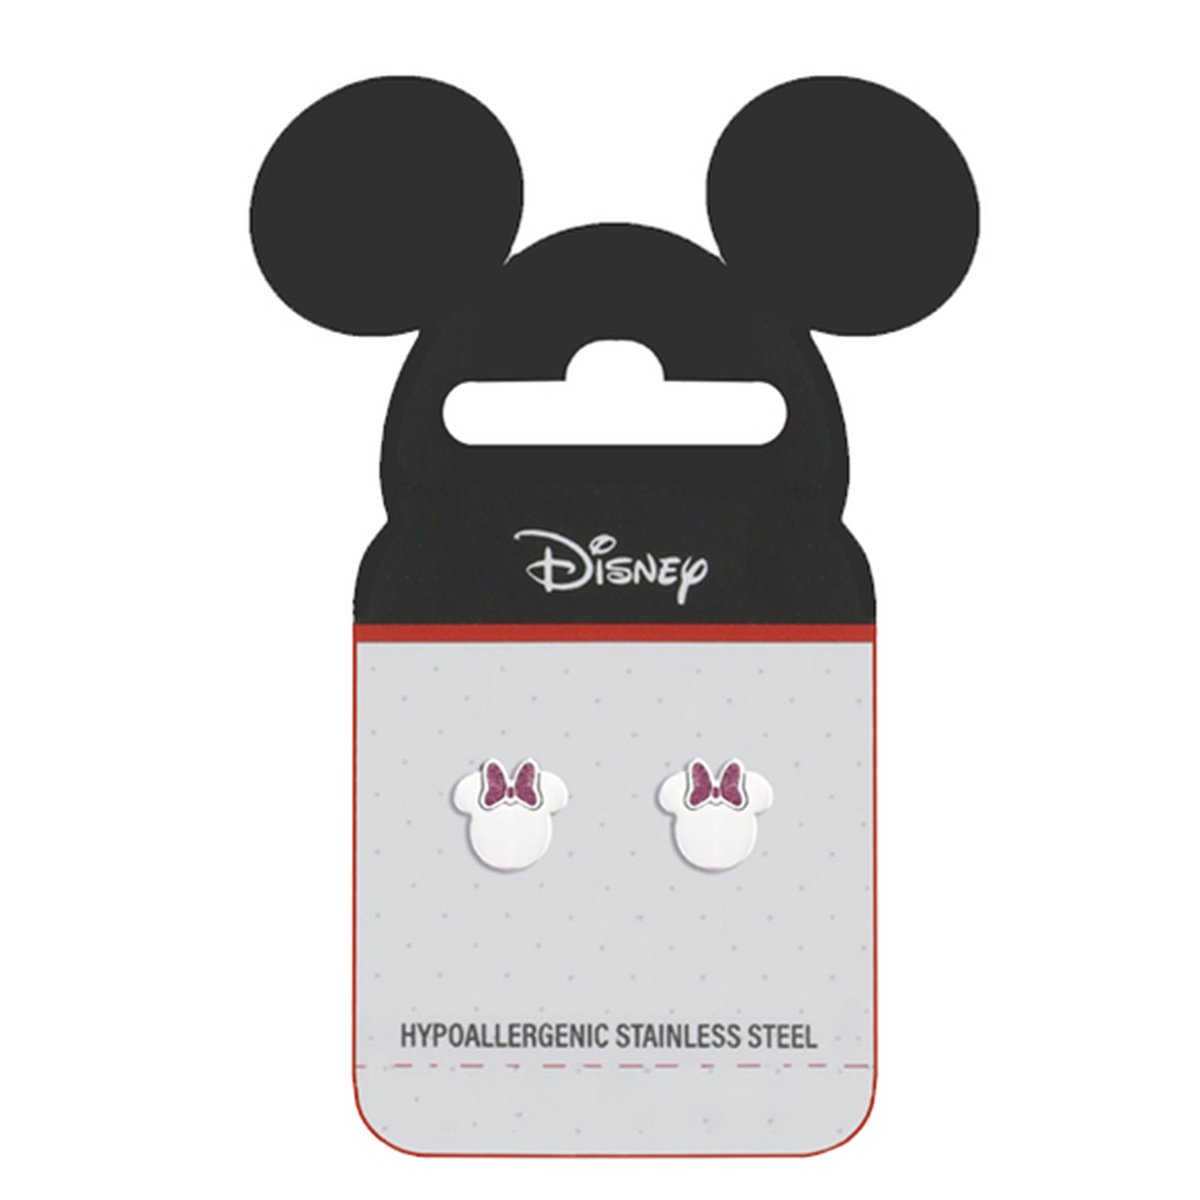 Disney 4-DIS046 Minnie Mouse Oorbellen - Minnie Oorknopjes - Disney Sieraden - 7,8x8mm - Roze Emaille Strikje - Staal - Hypoallergeen - Zilverkleurig